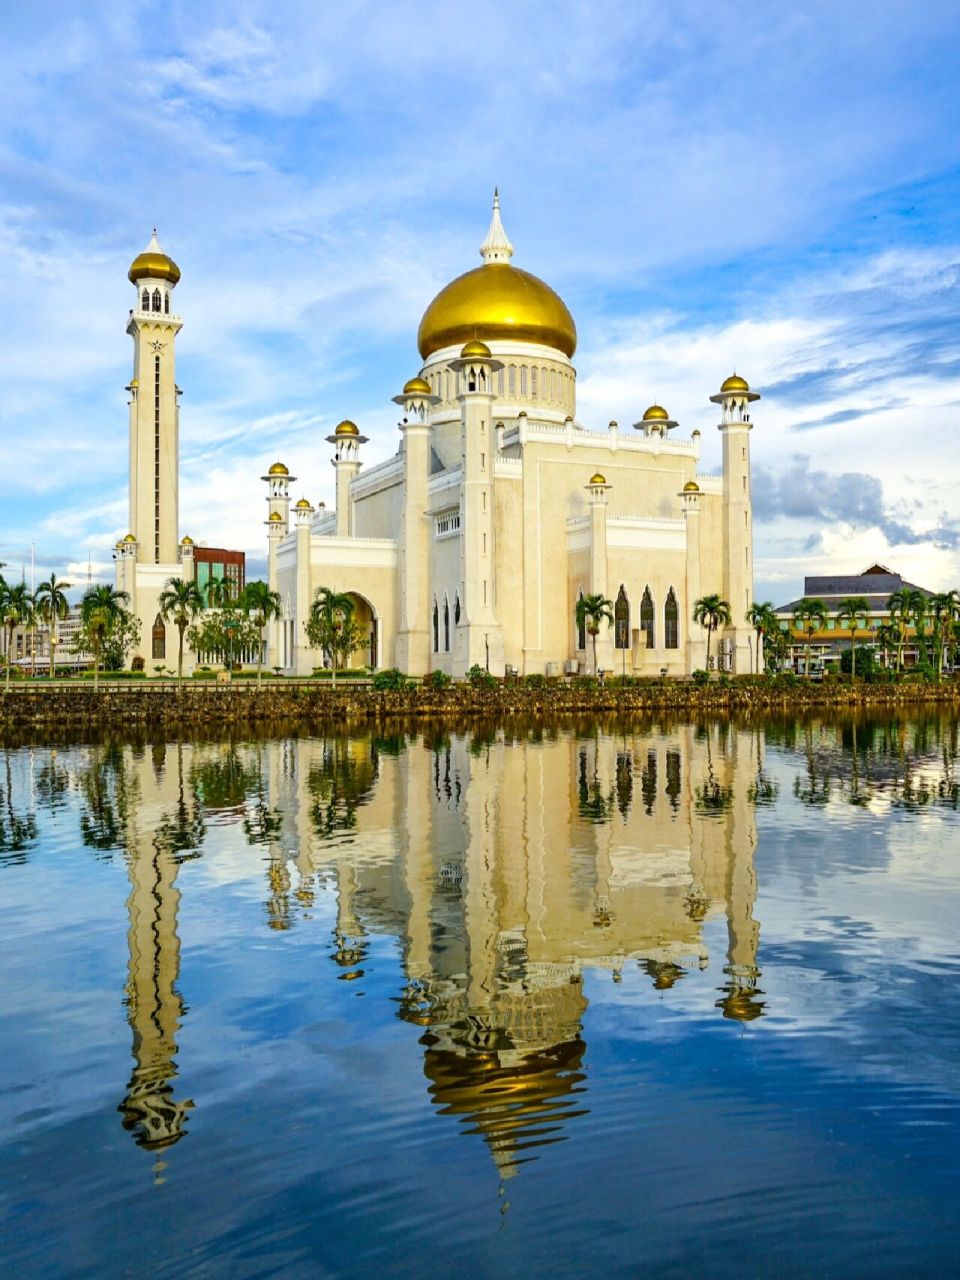 文莱有多豪,这座建筑的拱顶就看得出来    73东南亚最美丽的清真寺